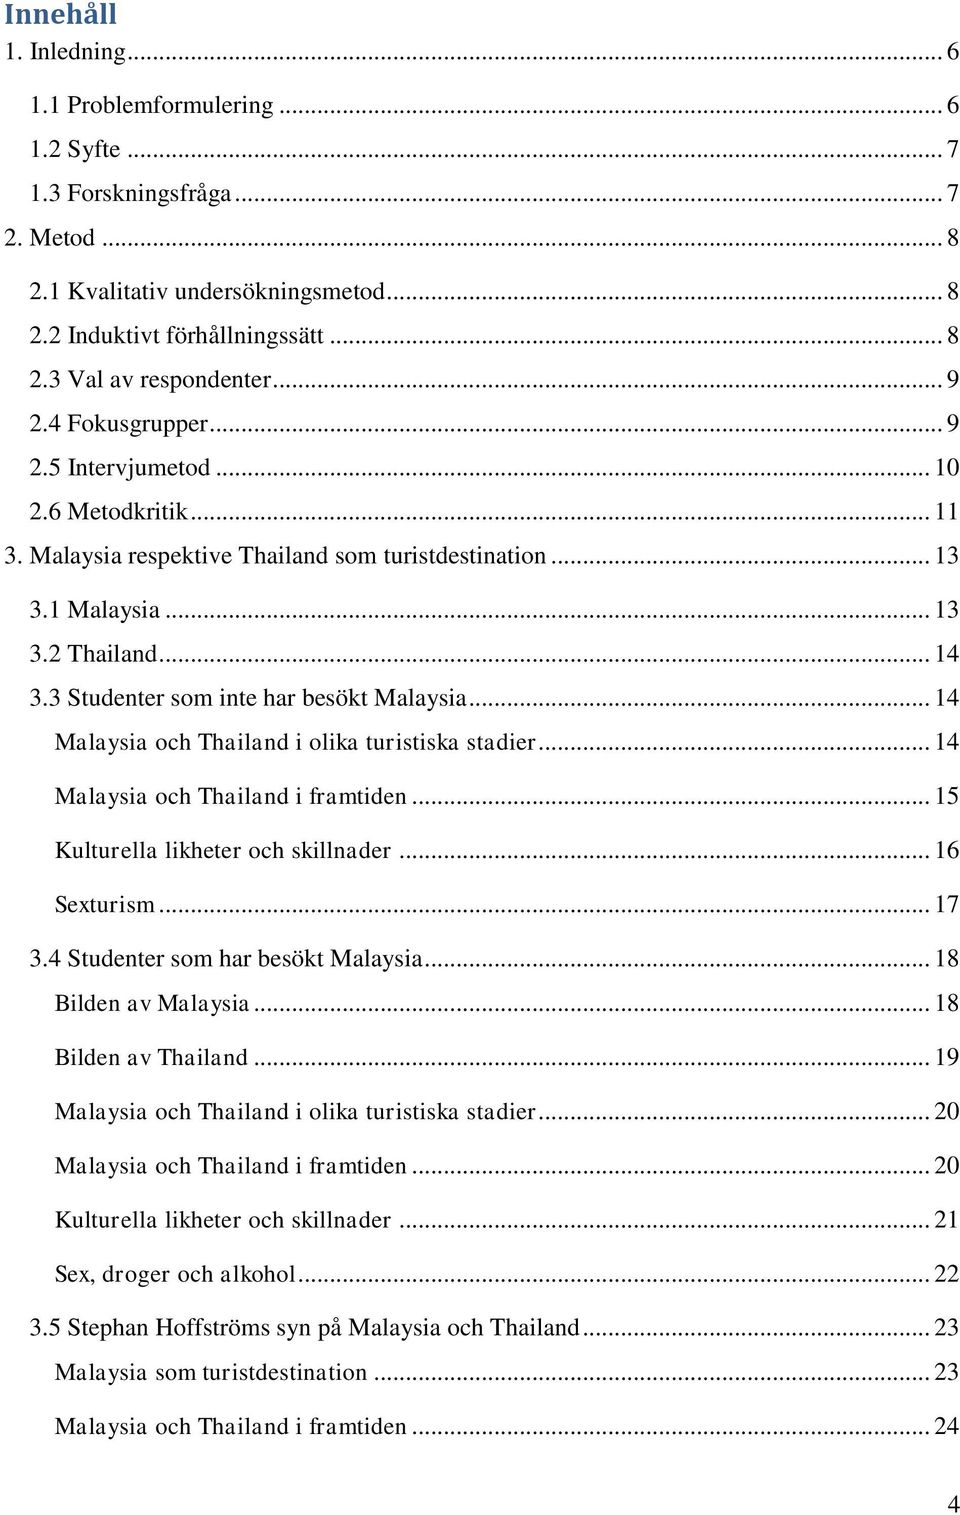 3 Studenter som inte har besökt Malaysia... 14 Malaysia och Thailand i olika turistiska stadier... 14 Malaysia och Thailand i framtiden... 15 Kulturella likheter och skillnader... 16 Sexturism... 17 3.